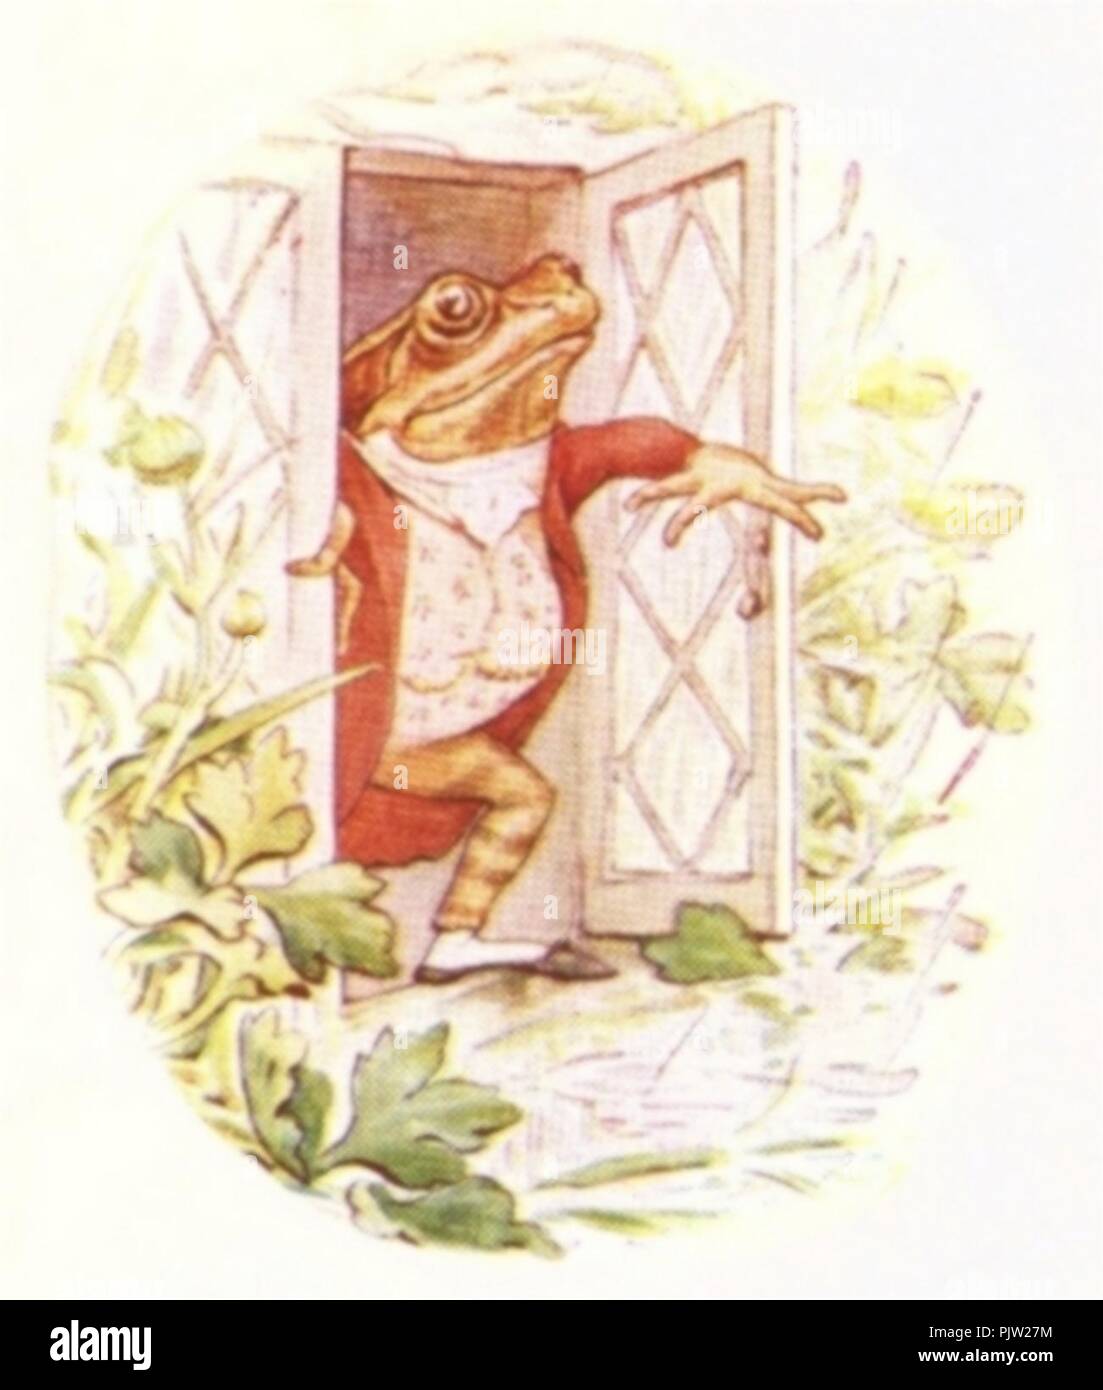 Beatrix Potter Vintage Mr. Jeremy Fisher Frog on Lilly Pad